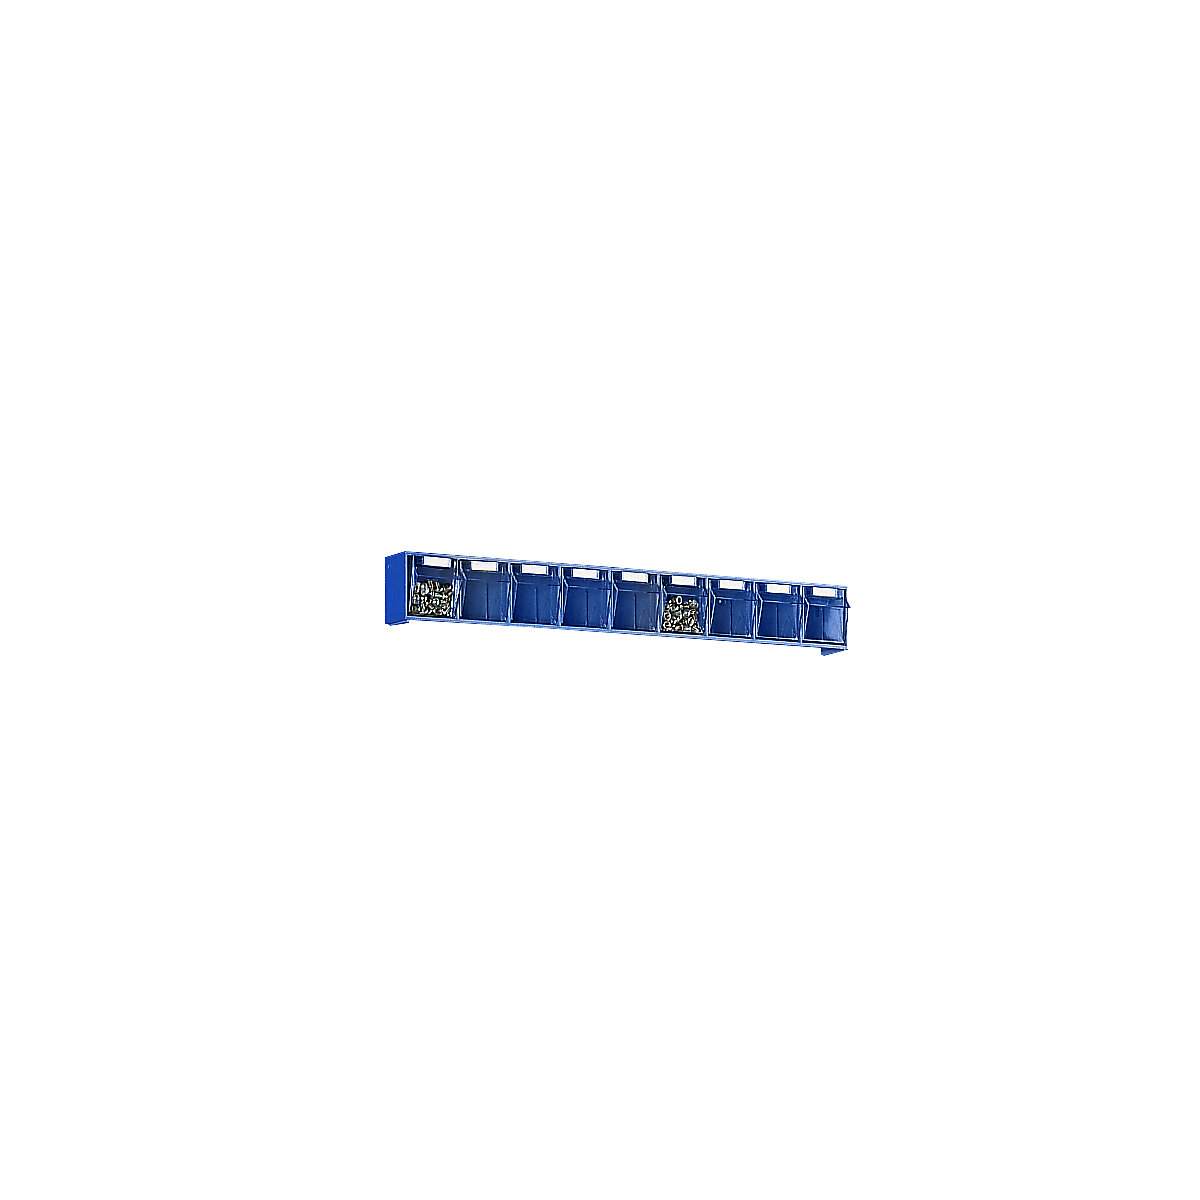 Systém vyklápěcích nádob, v x š x h tělesa 77 x 600 x 62 mm, 9 přepravek, modrá-6